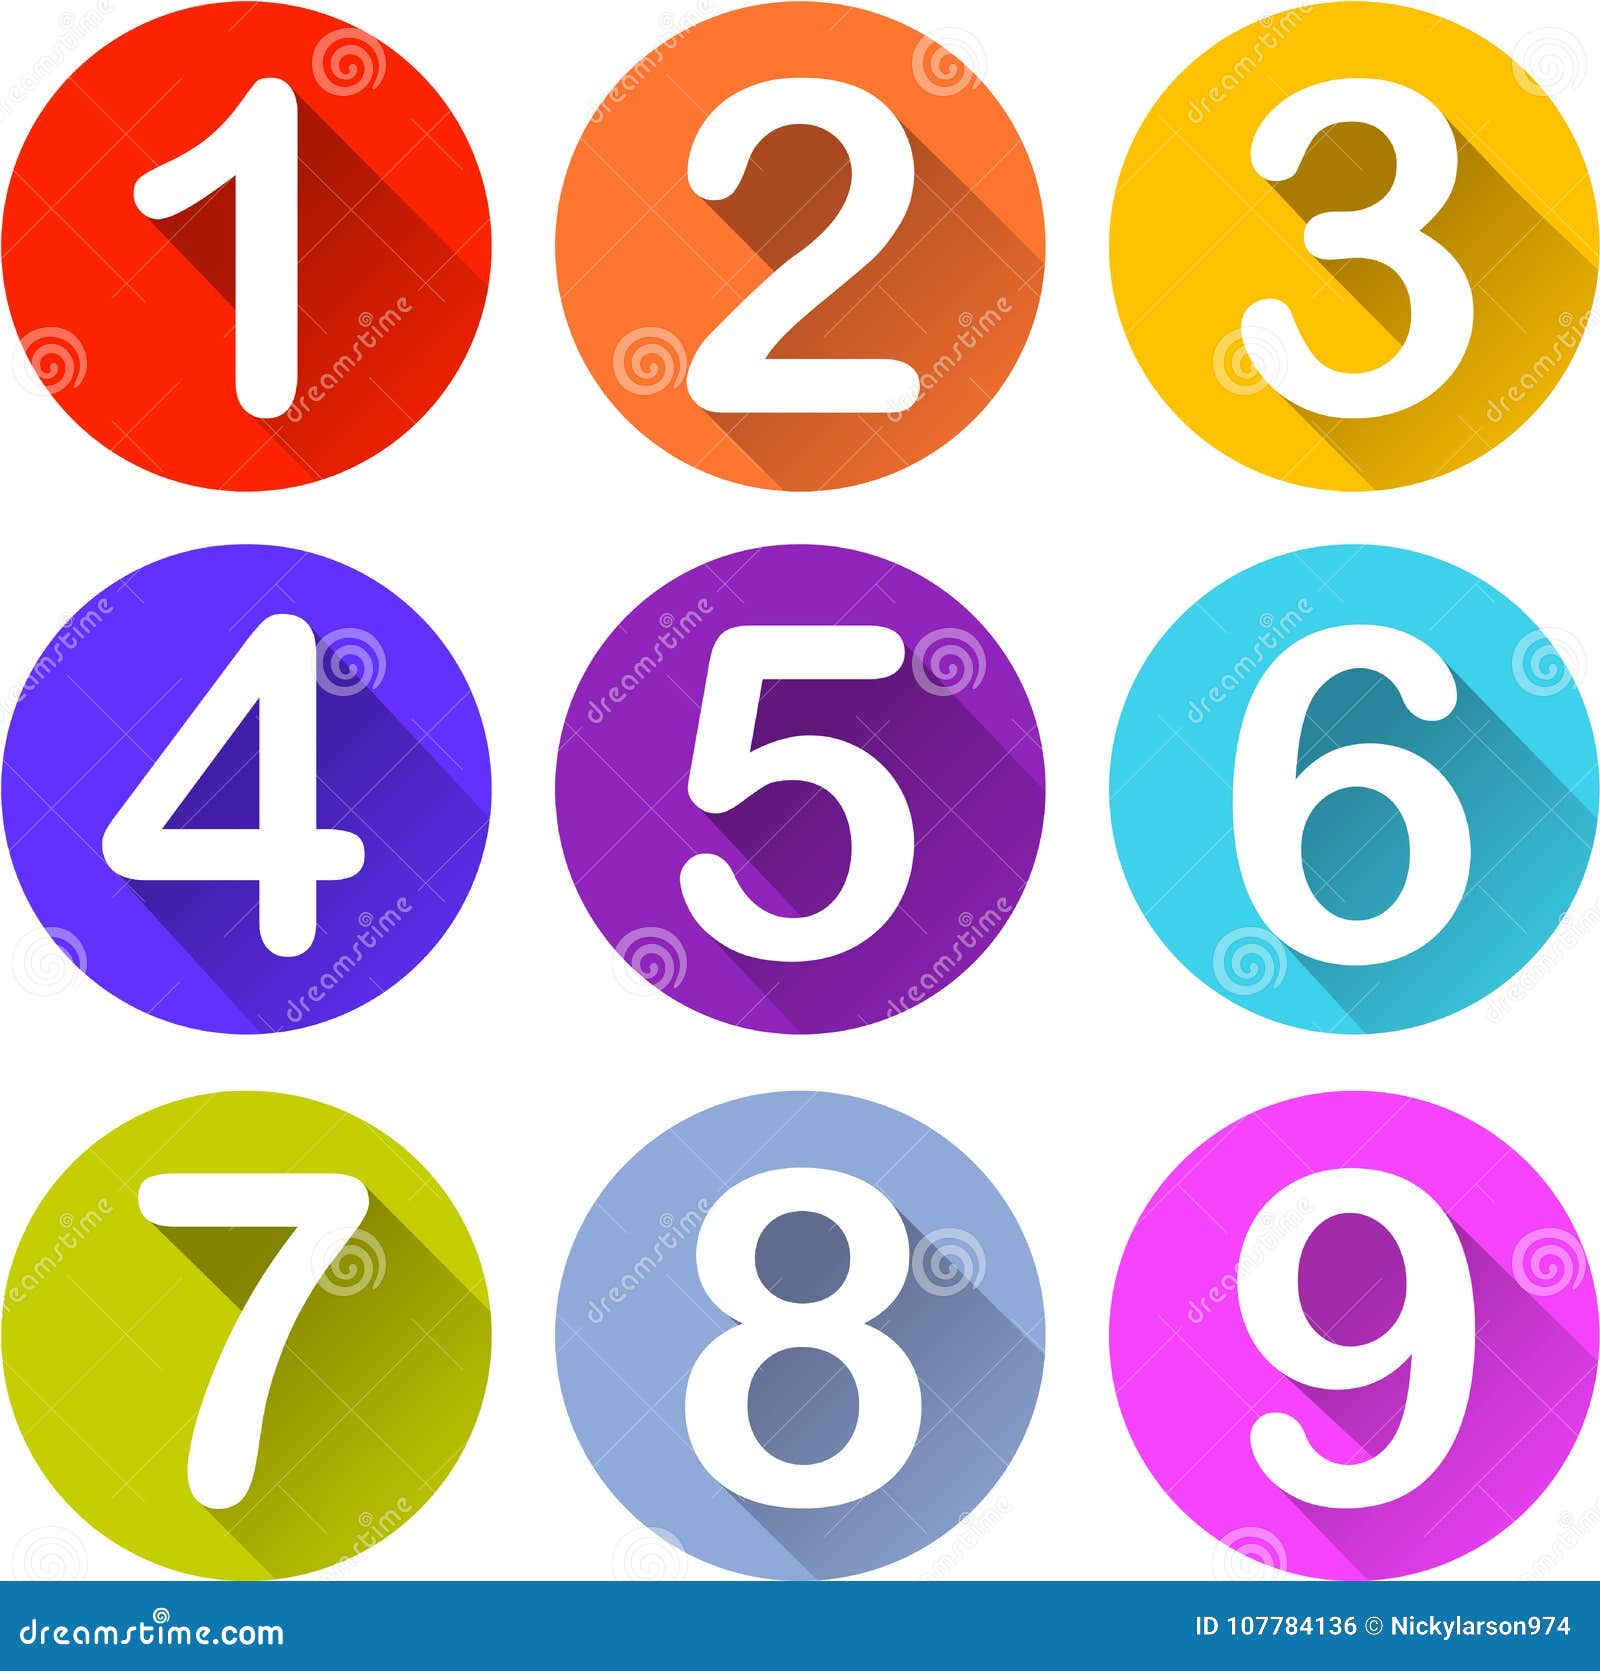 Красочные значки номеров. Иллюстрация 9 красочных значков номеров на белой предпосылке